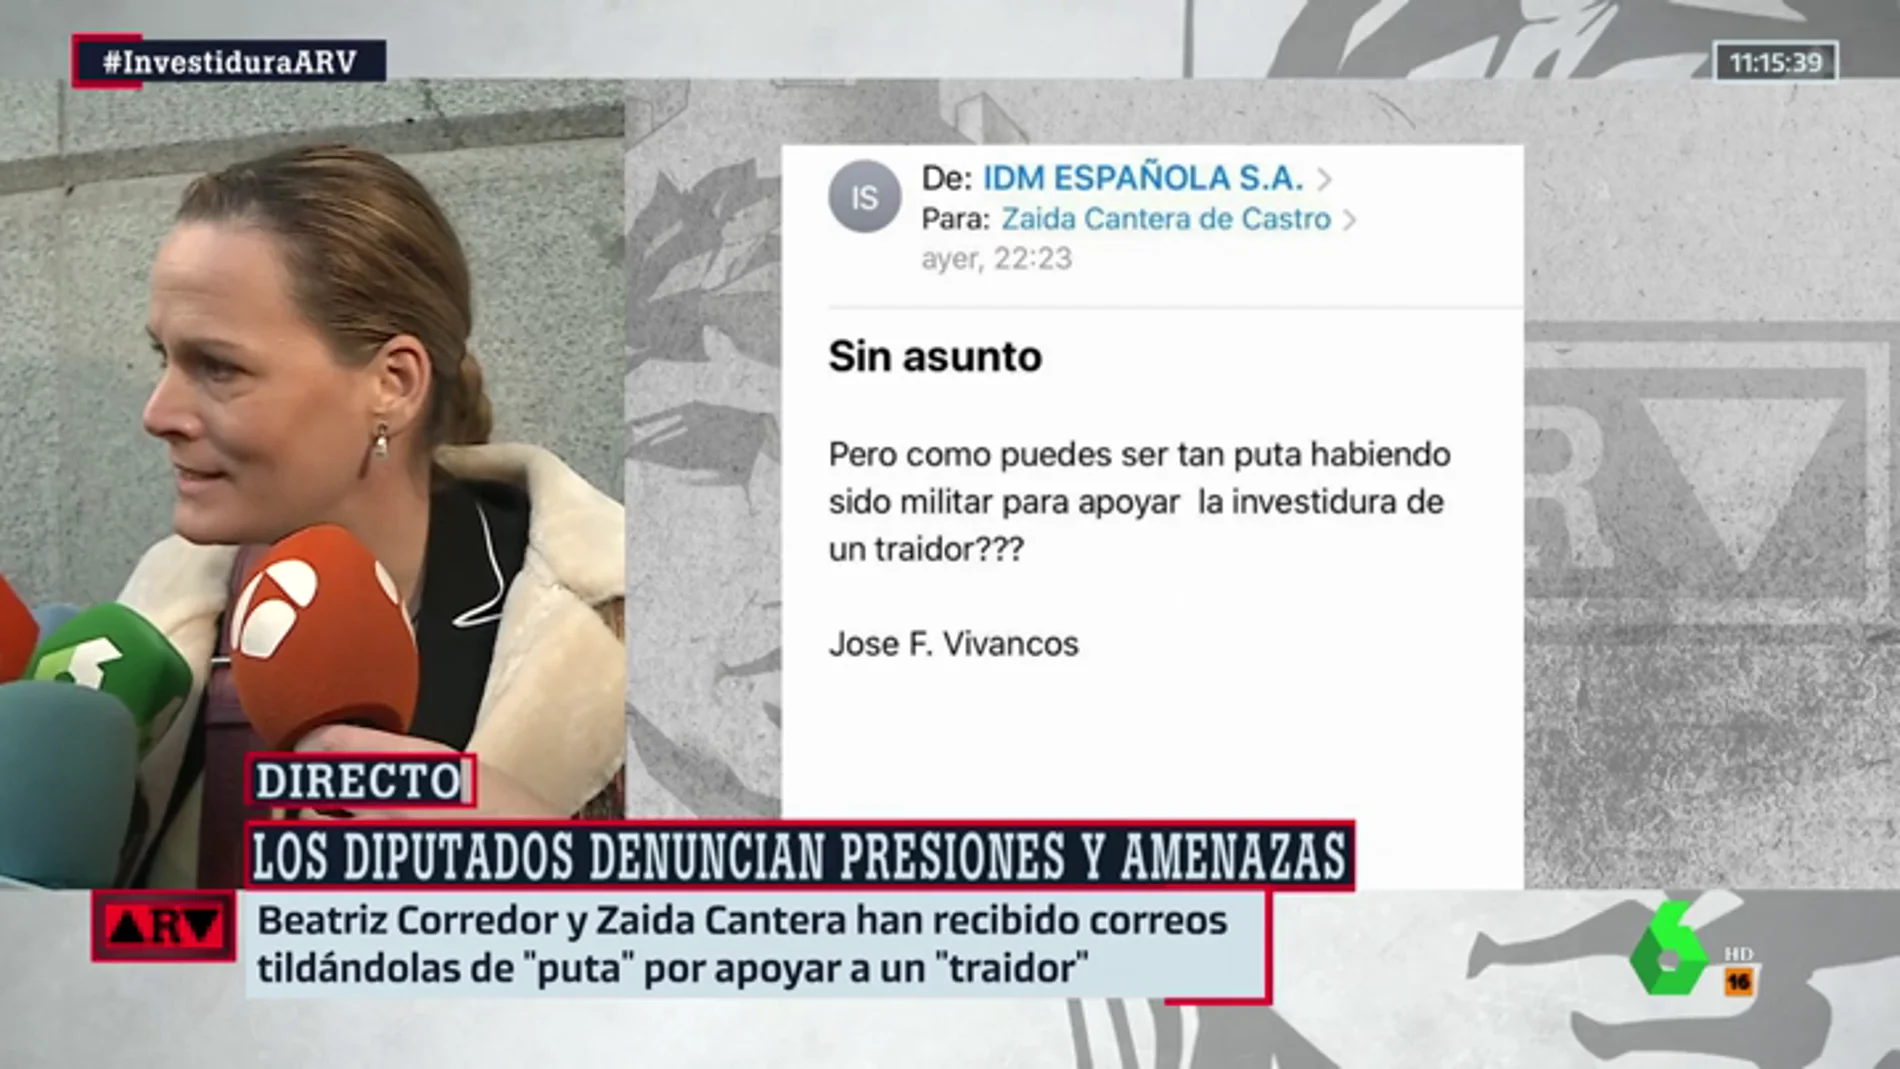 El hombre que insultó a Zaida Cantera (PSOE) pide disculpas: "Fue un calentón, utilicé términos inaceptables"